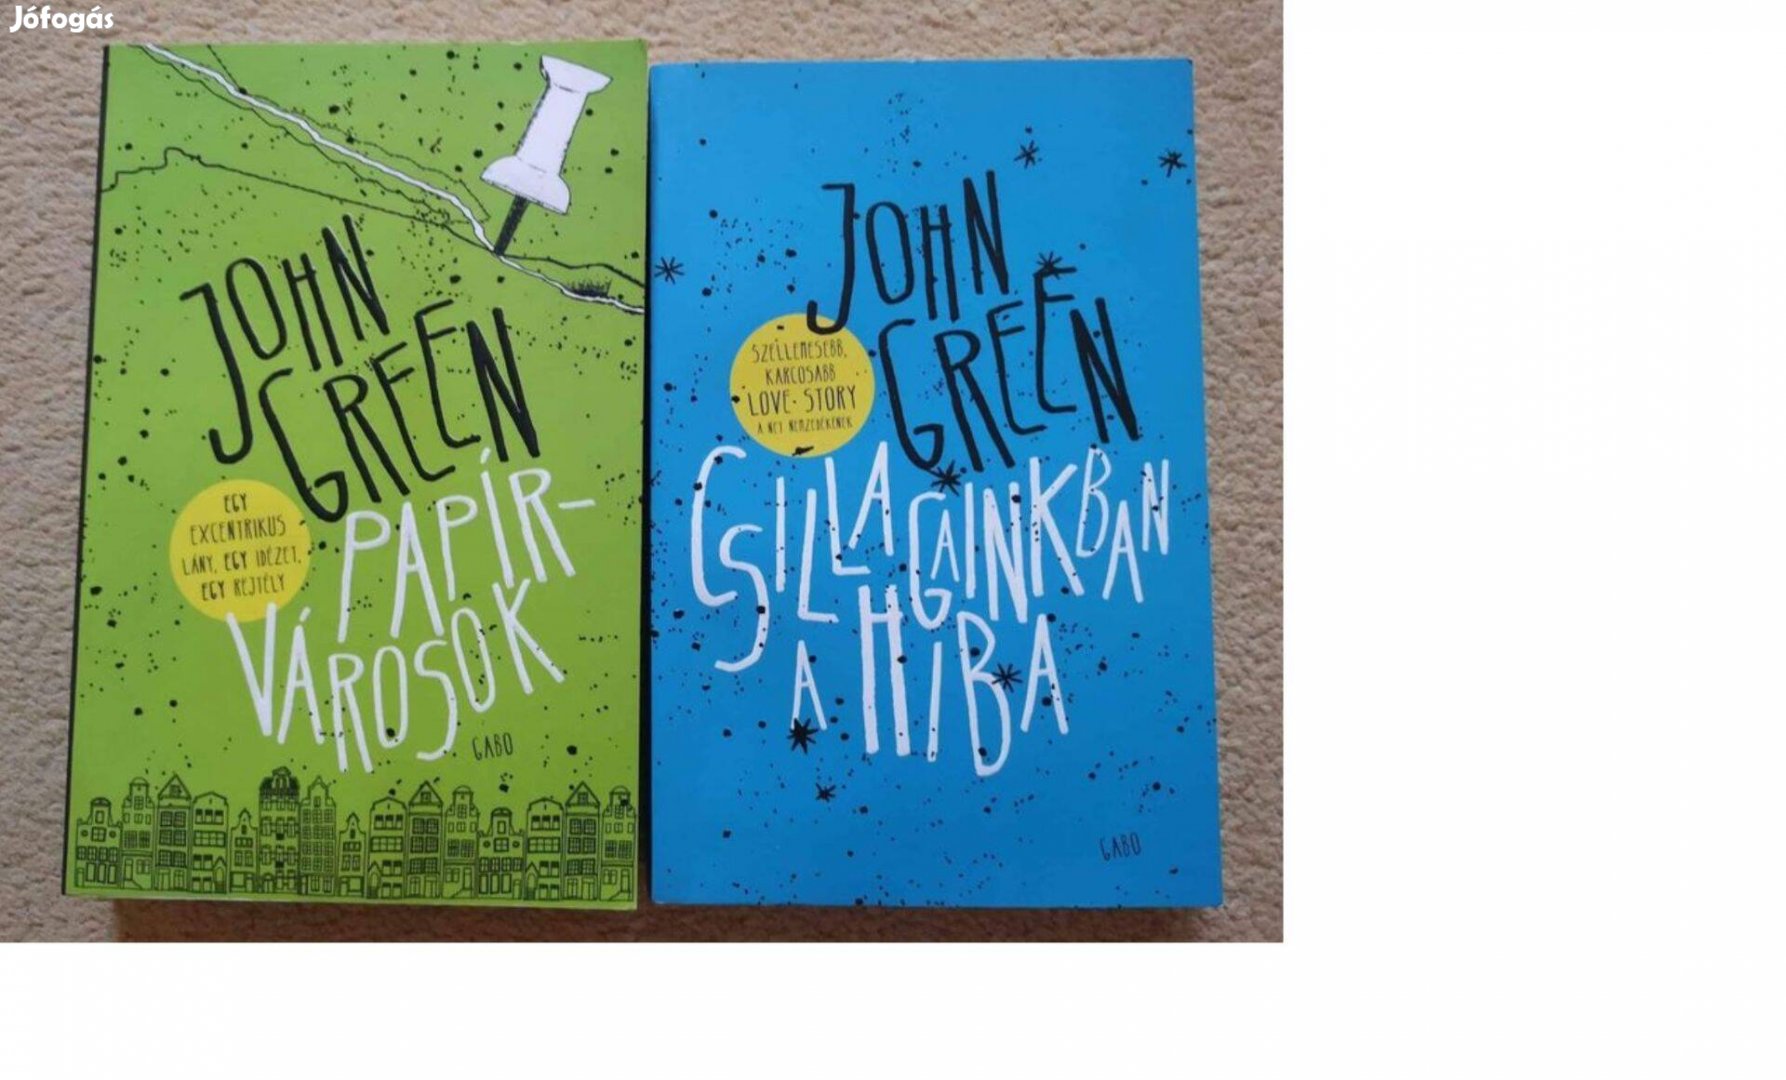 John Green könyvek: Papírvárisok, Csillagainkban a hiba 1500 Ft